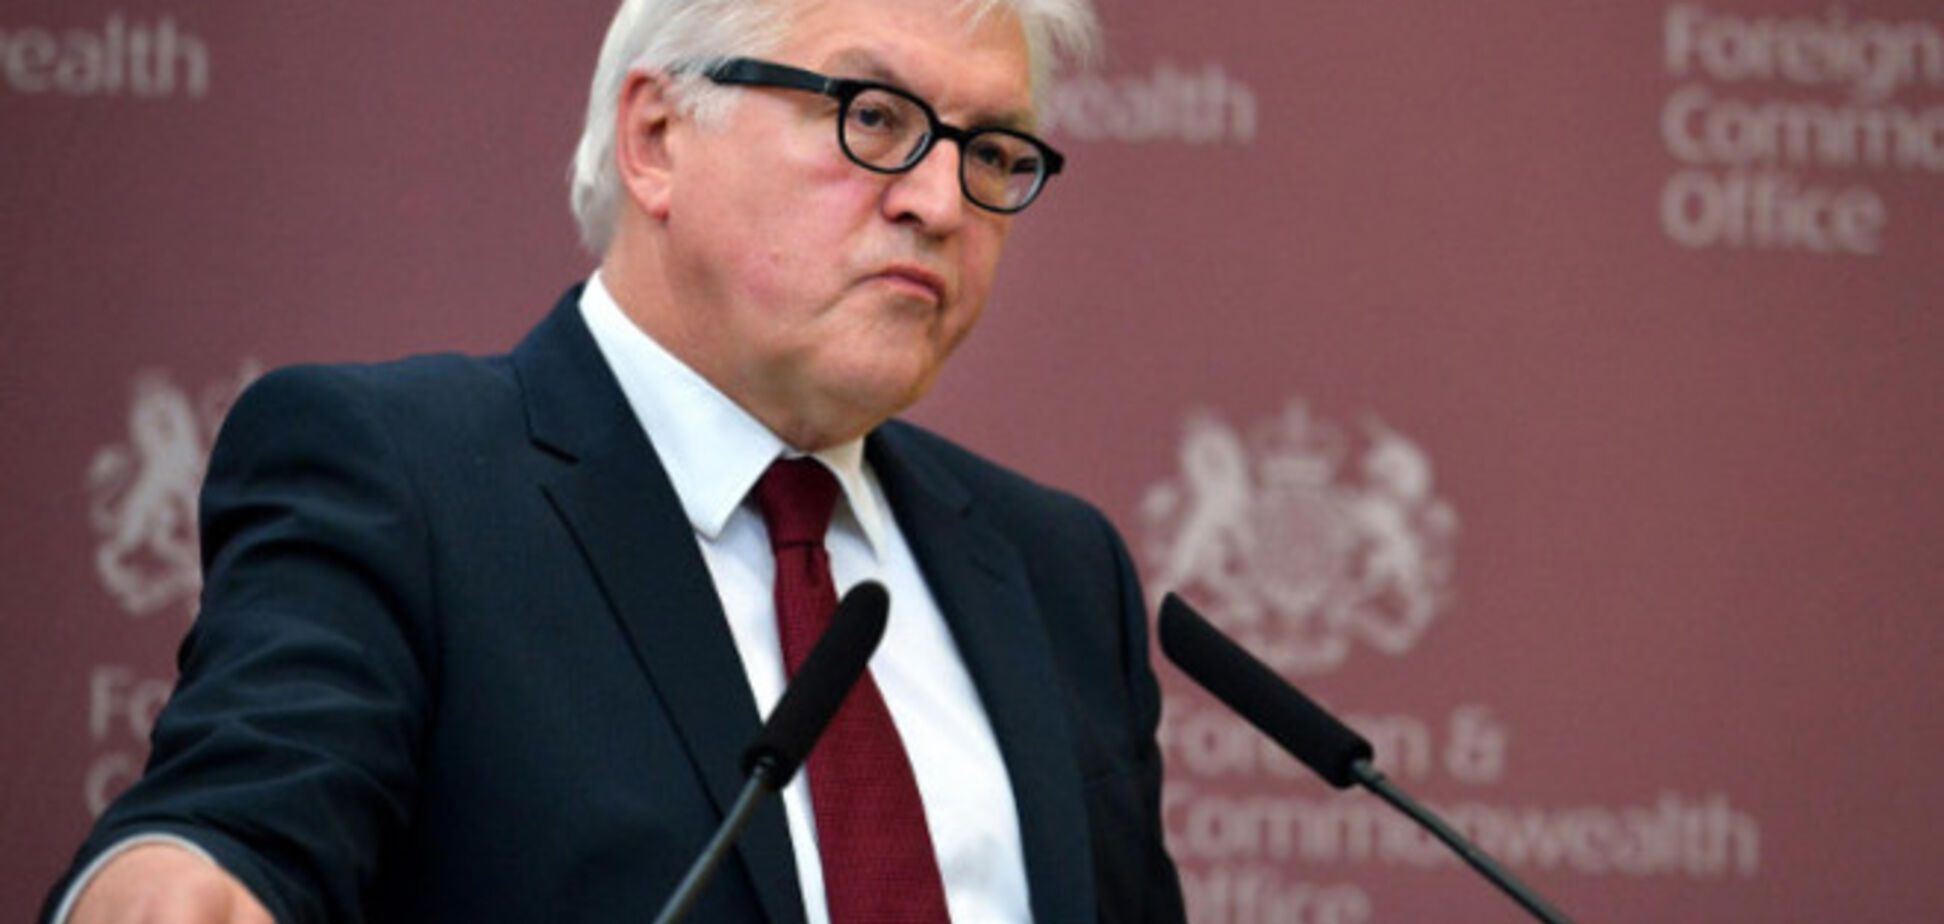 Німеччина пообіцяла повернутися до прохання України про відправку миротворців на Донбас - Штайнмаєр